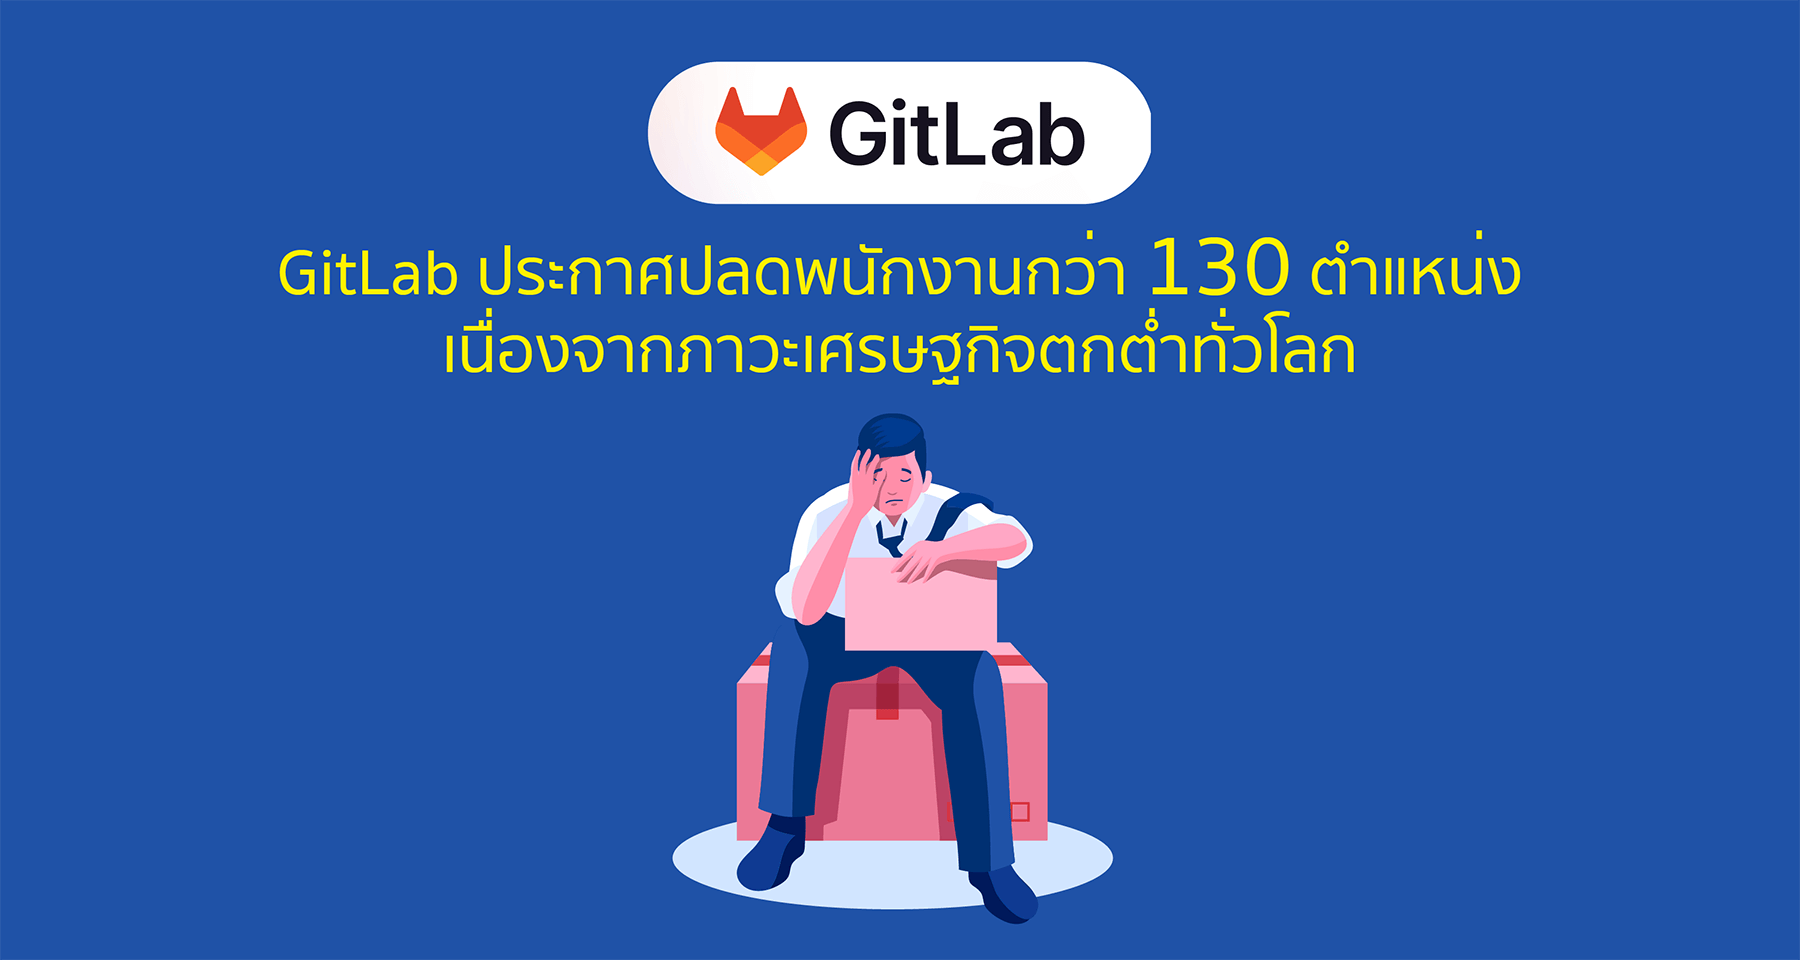 GitLab ประกาศปลดพนักงานกว่า 130 ตำแหน่ง เนื่องจากภาวะเศรษฐกิจตกต่ำทั่วโลก